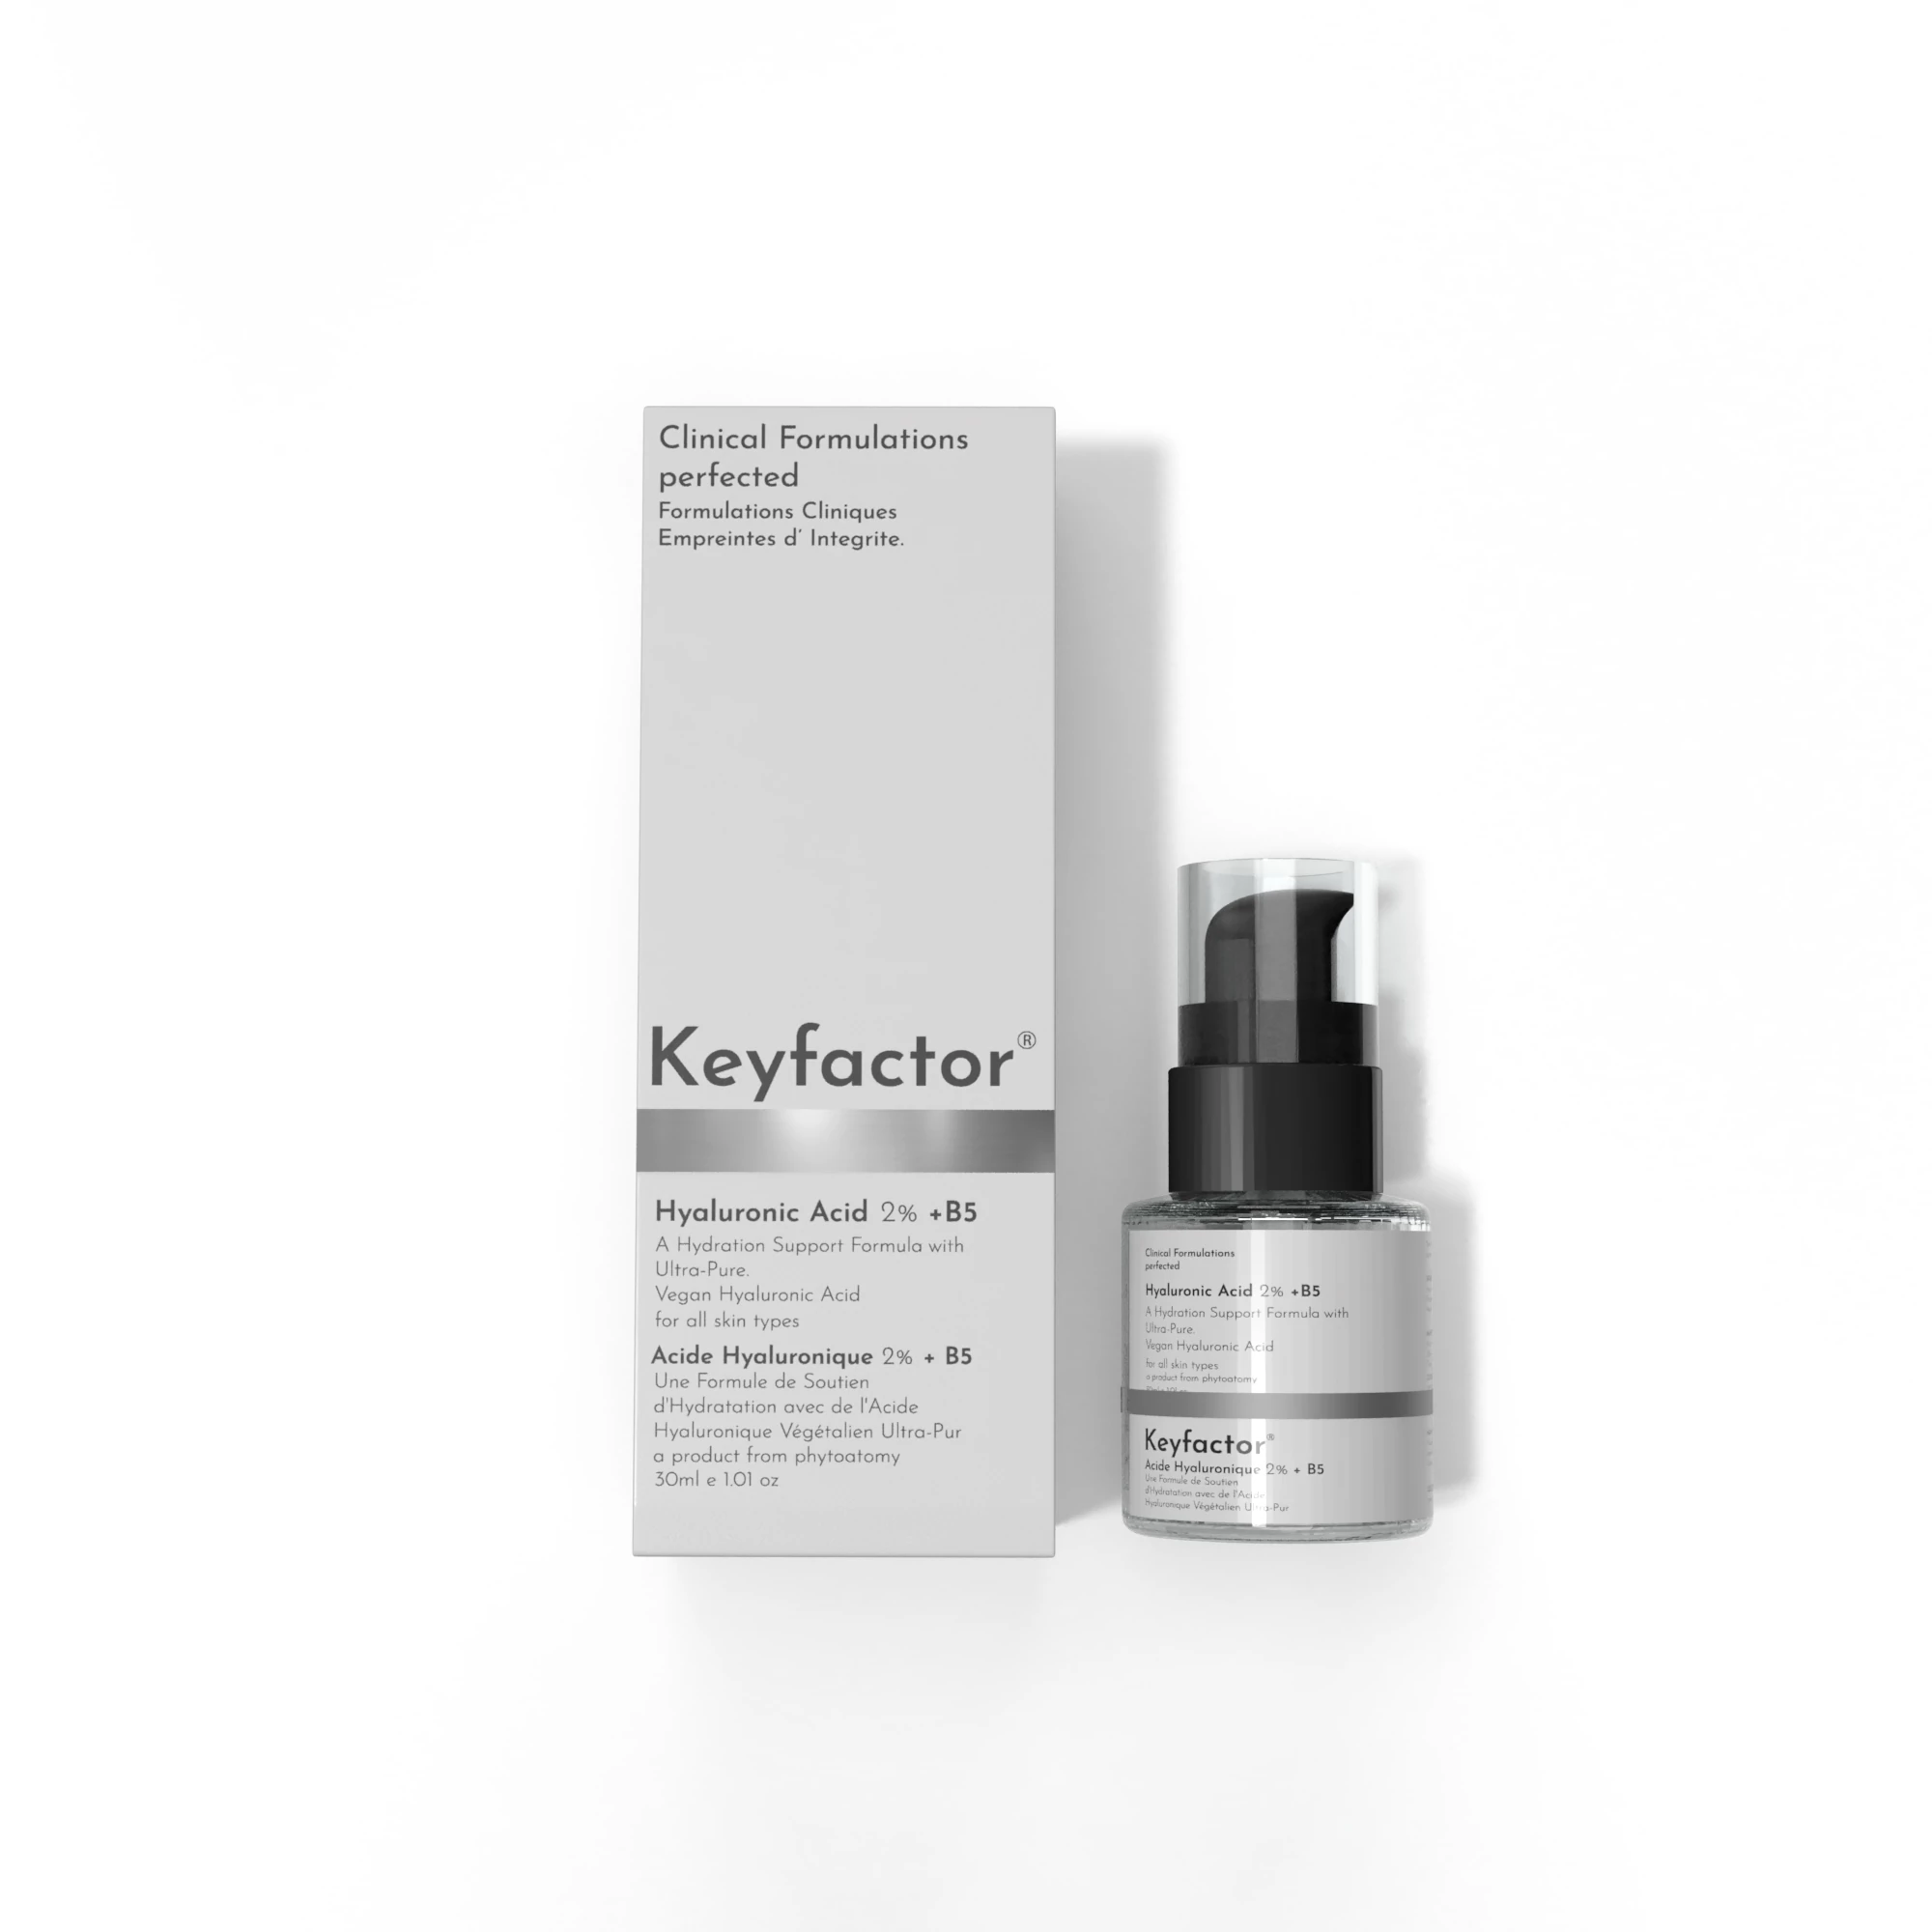 Kf-Hyaluronic Acid 2% + B5 -30Ml.(For Skin hydration)